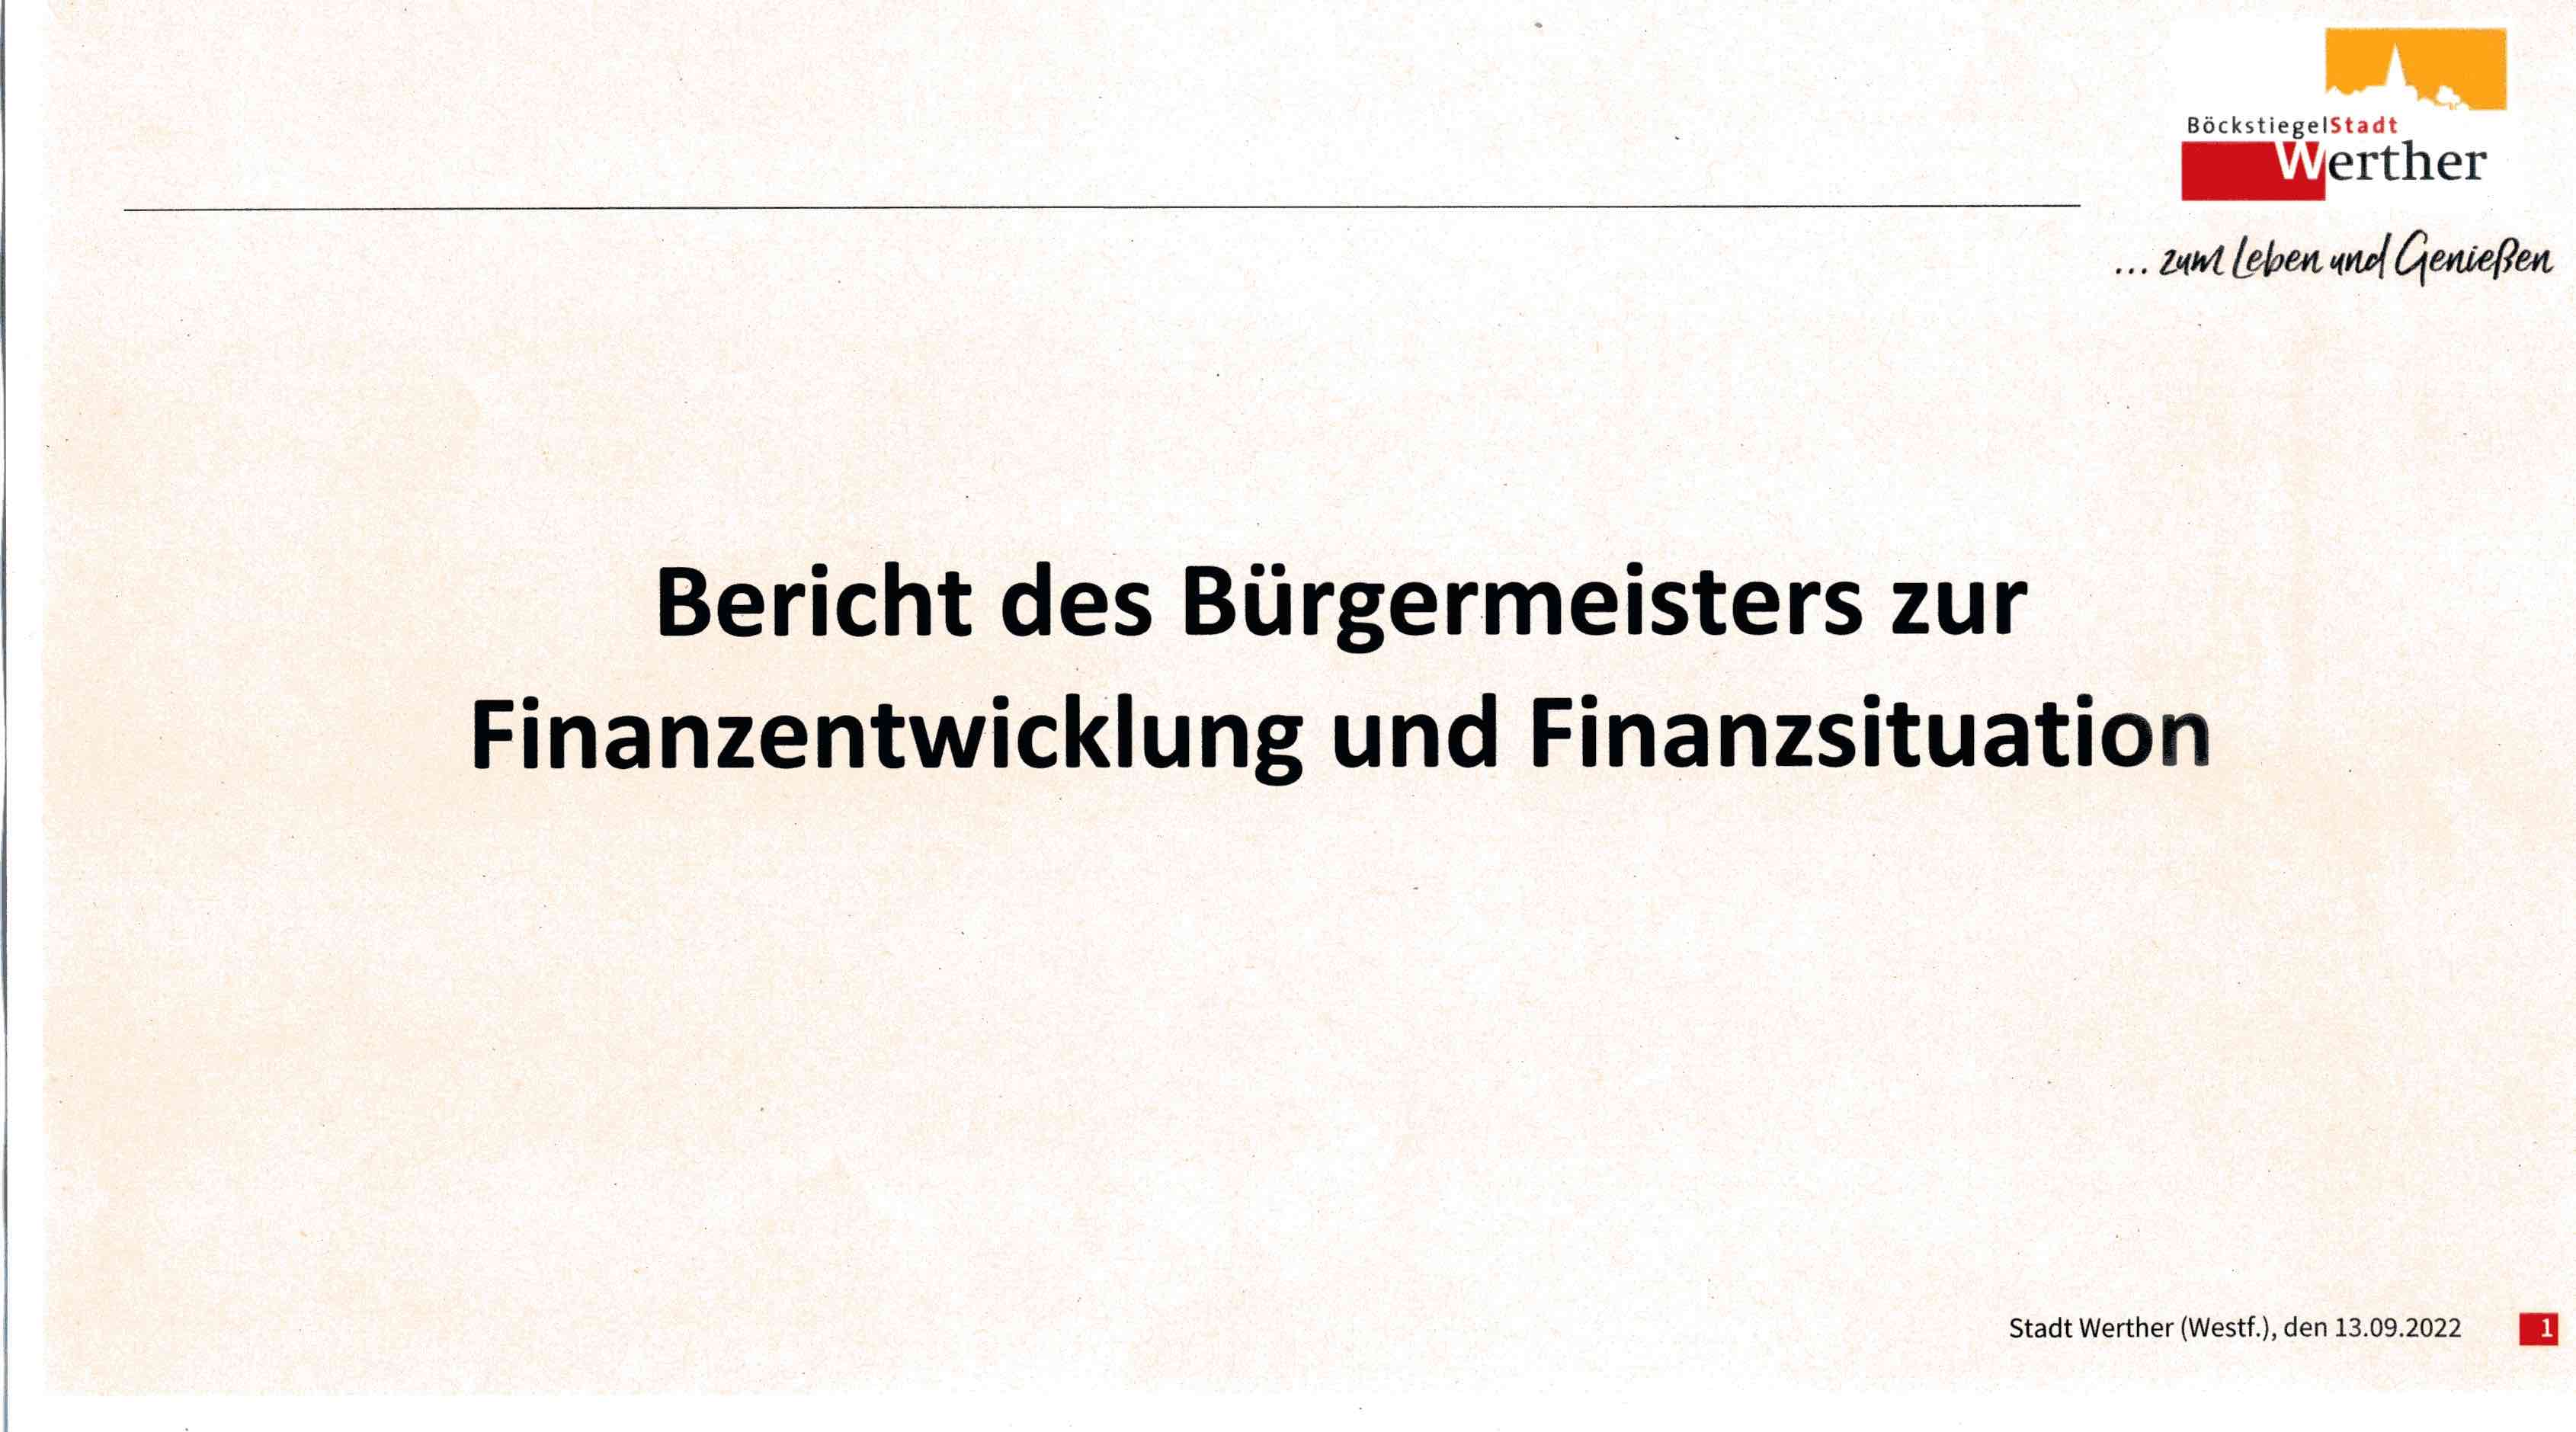 Finanzen_Werther003.jpg